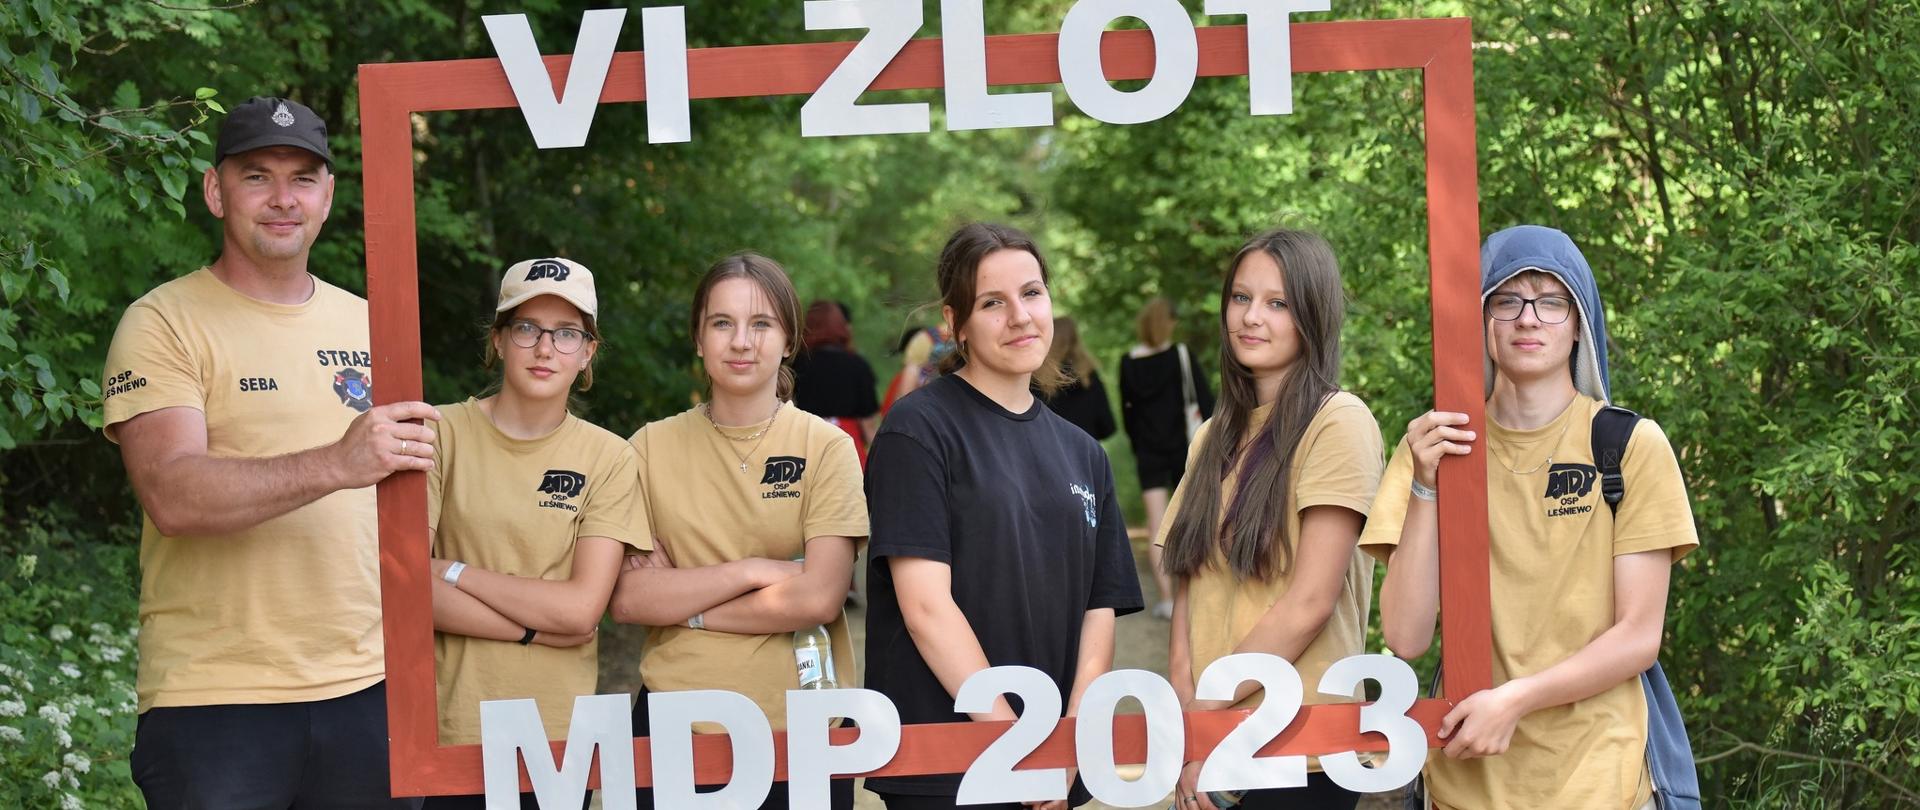 Na zdjęciu znajduje się młodzieżowa drużyna pożarnicza z szyldem VI Zlot MDP 2023